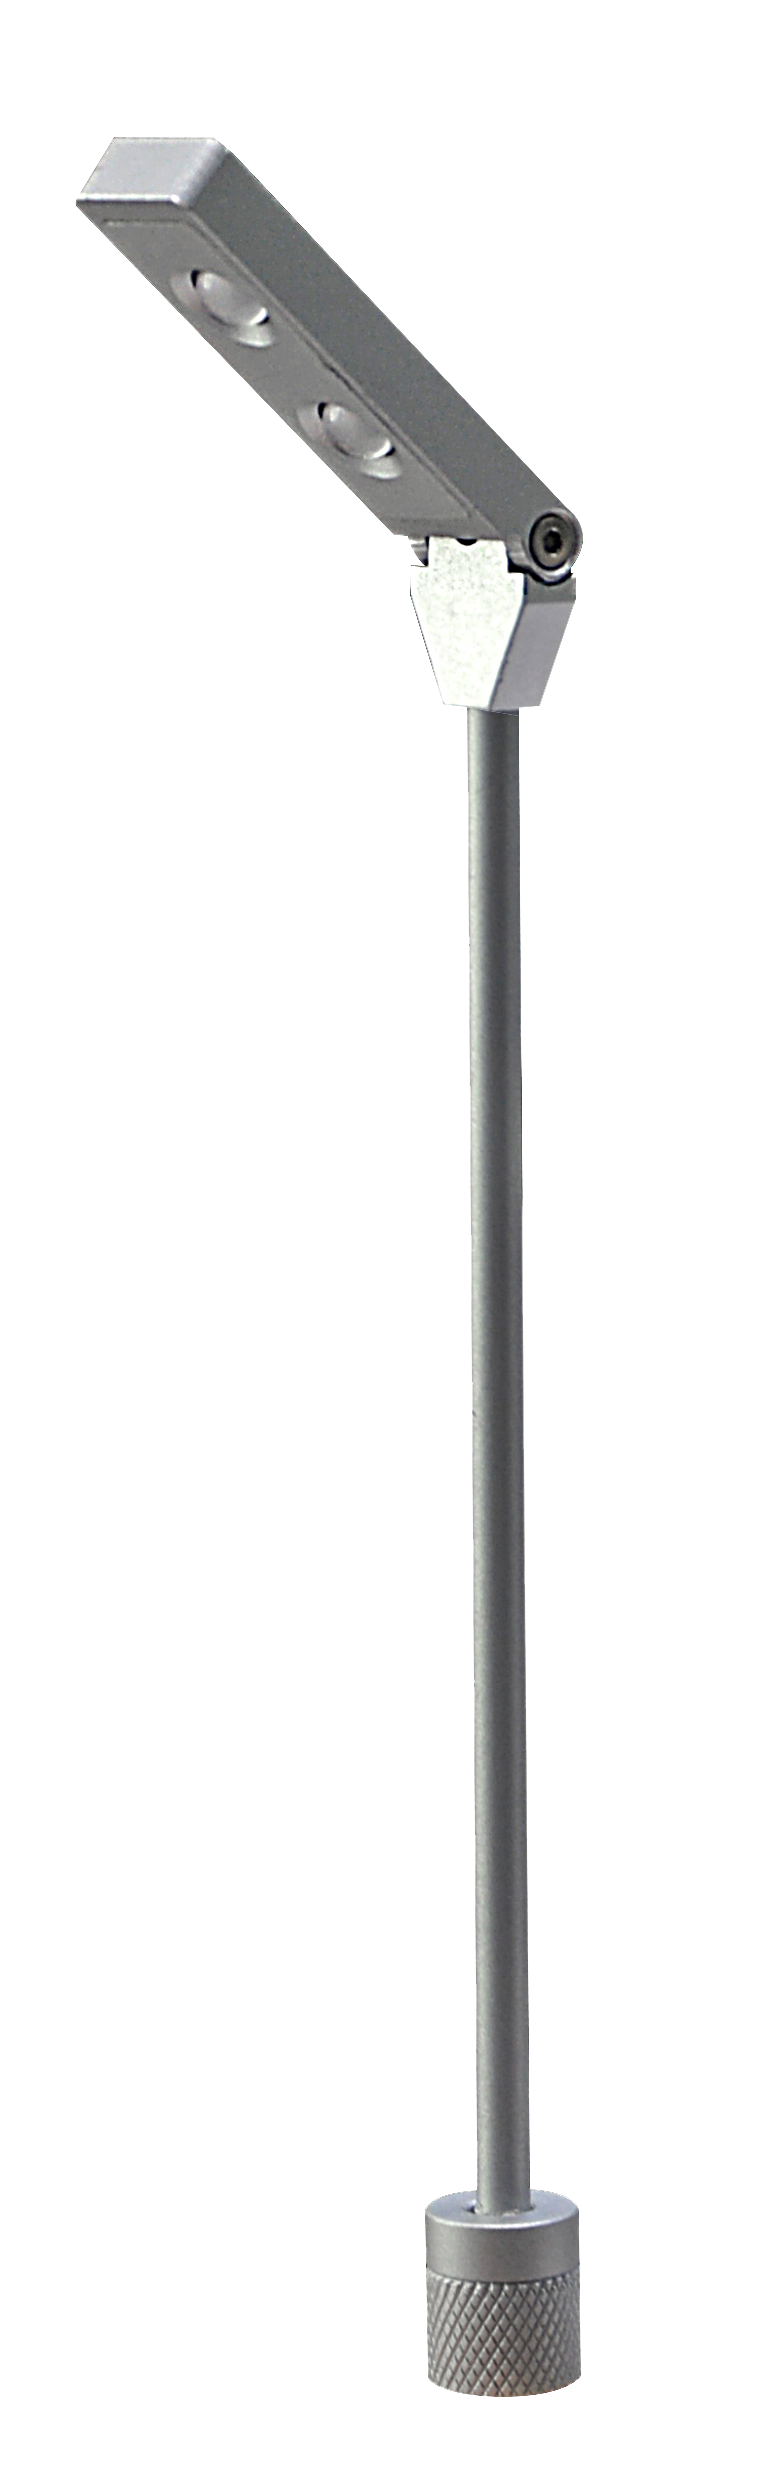 2X1W LED showcase pole light